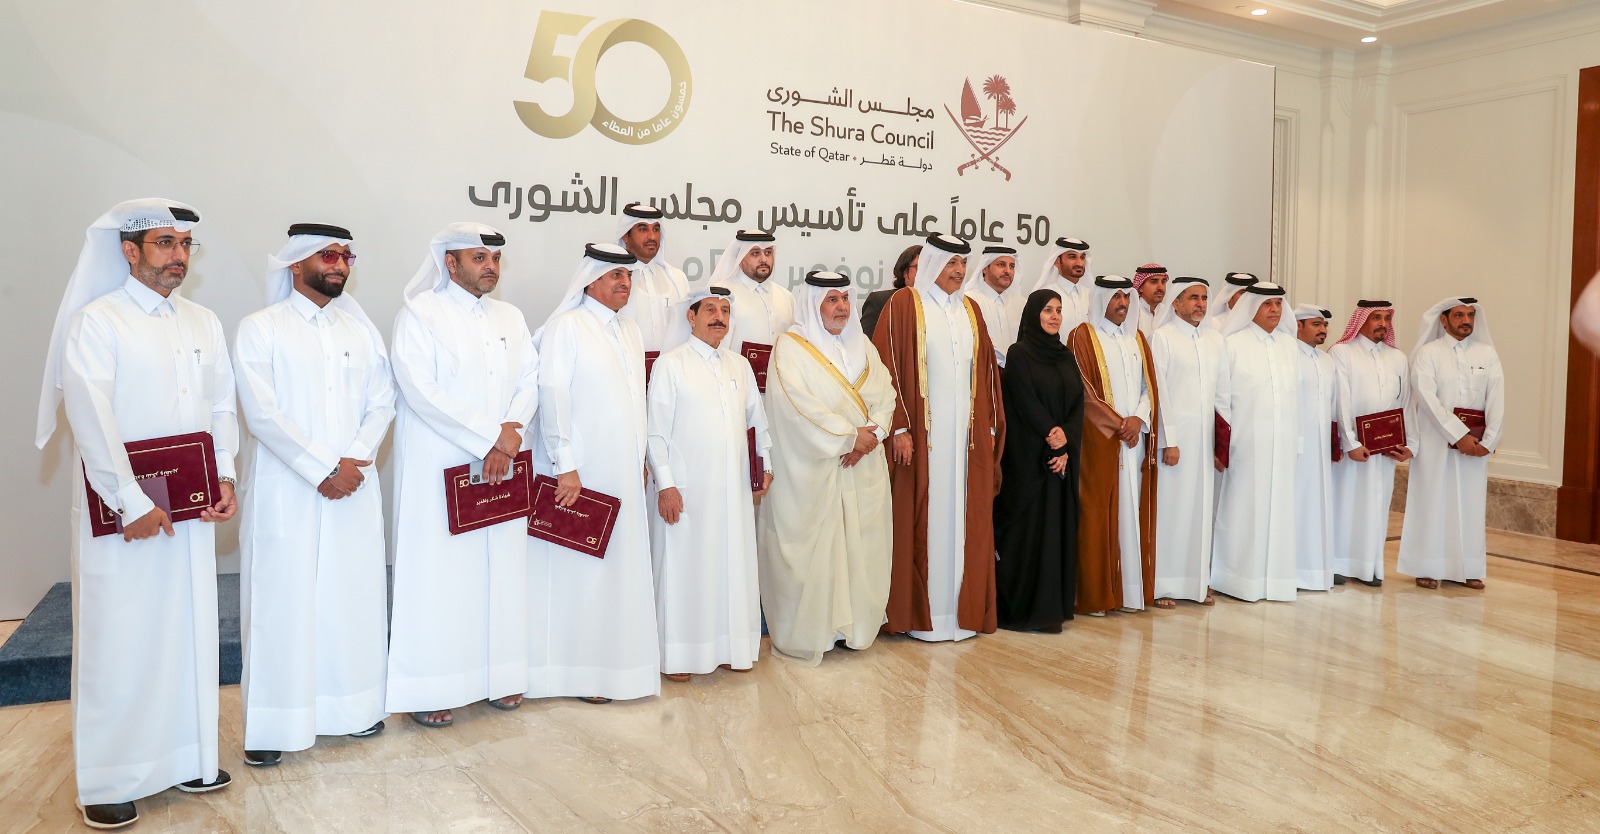 مجلس الشورى يحتفل بمرور 50 عاماً على تأسيسه